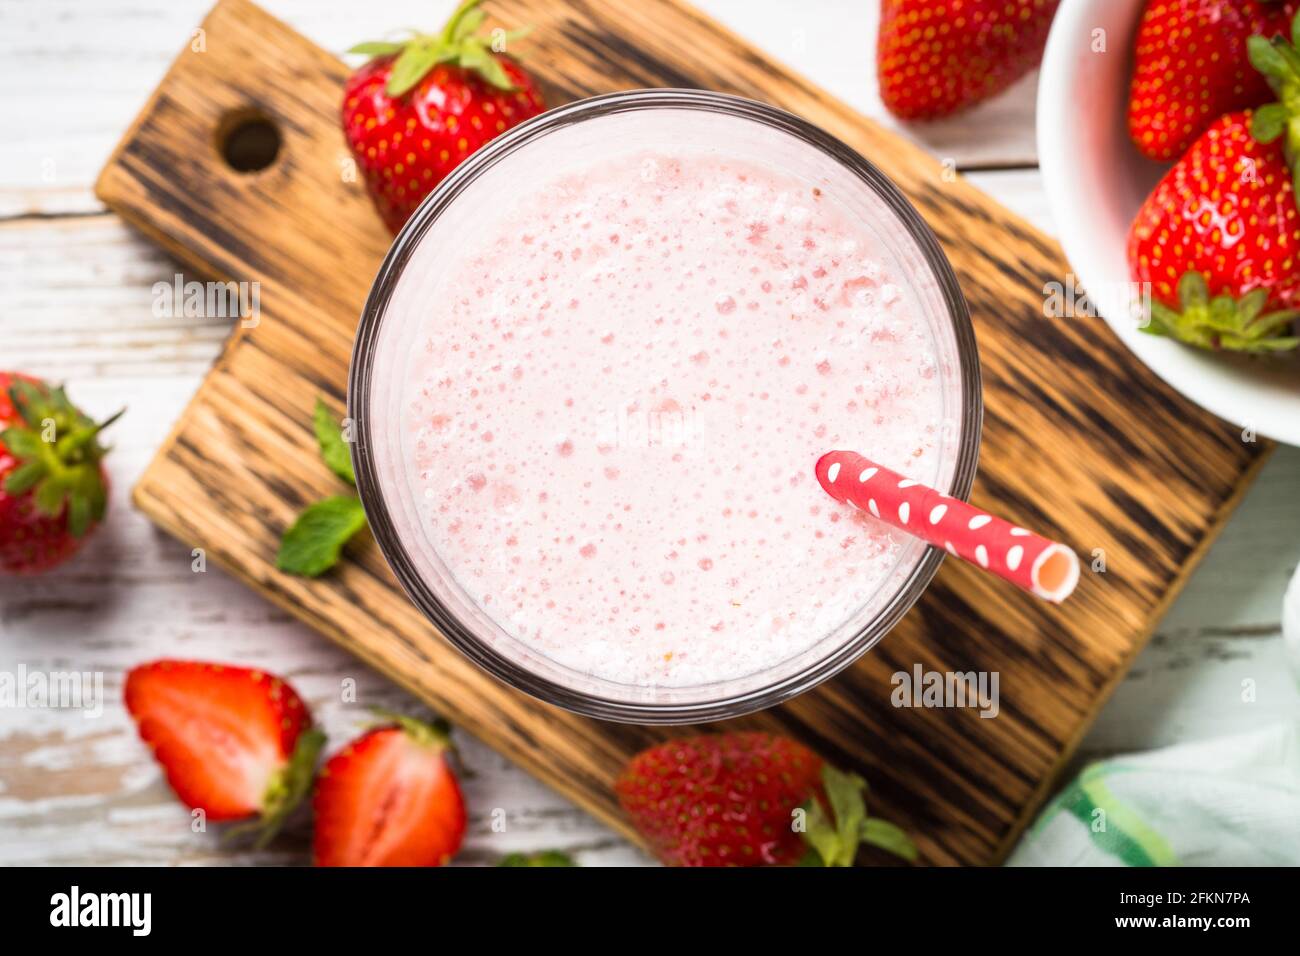 Erdbeer-Smoothie oder Milchshake am weißen Tisch. Stockfoto